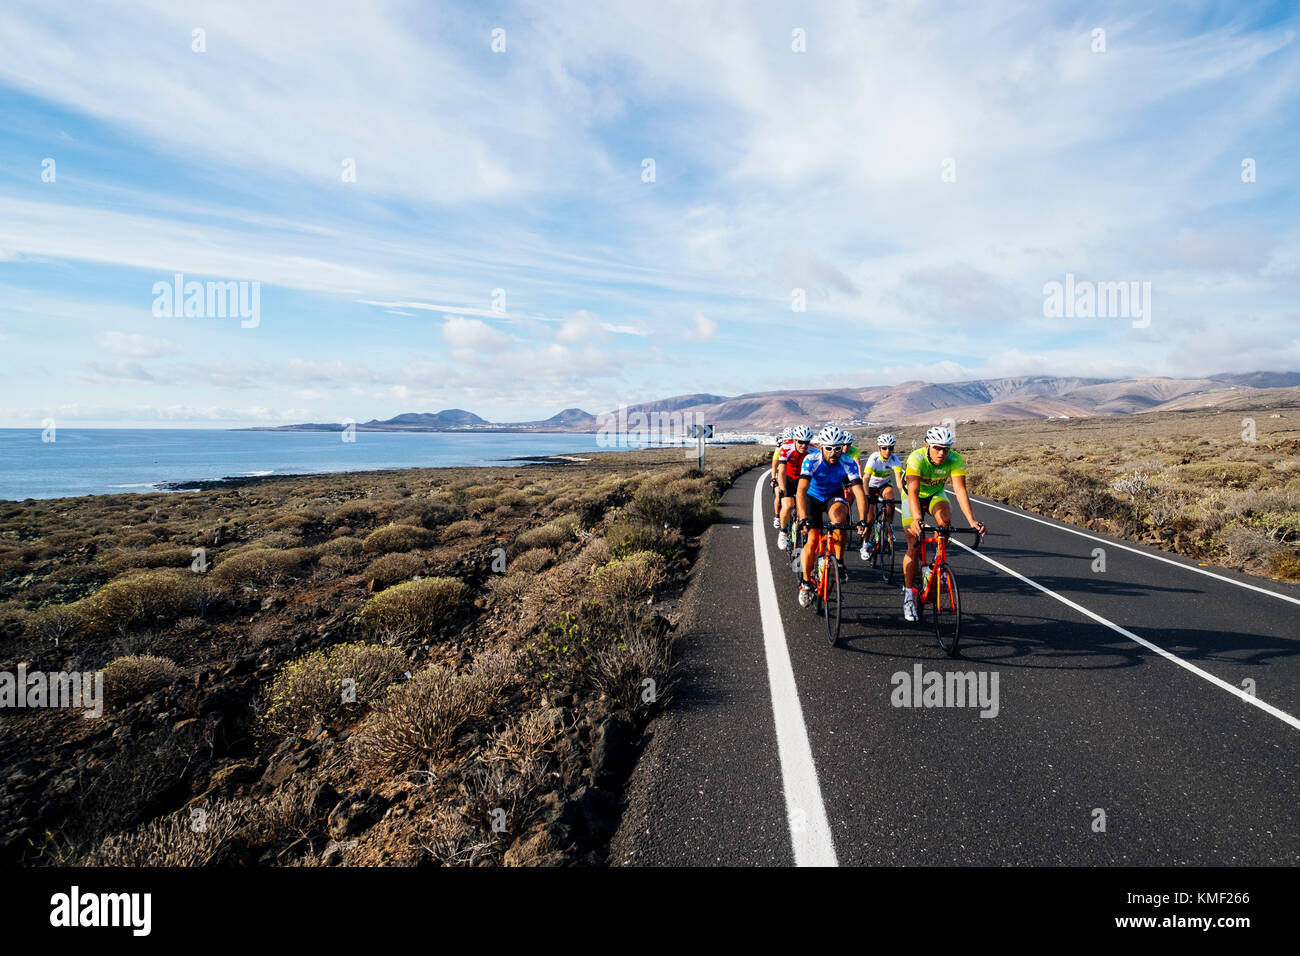 Un gruppo di ciclisti su strada equitazione sulla strada vicino alla costa, Lanzarote, Isole Canarie, Spagna Foto Stock